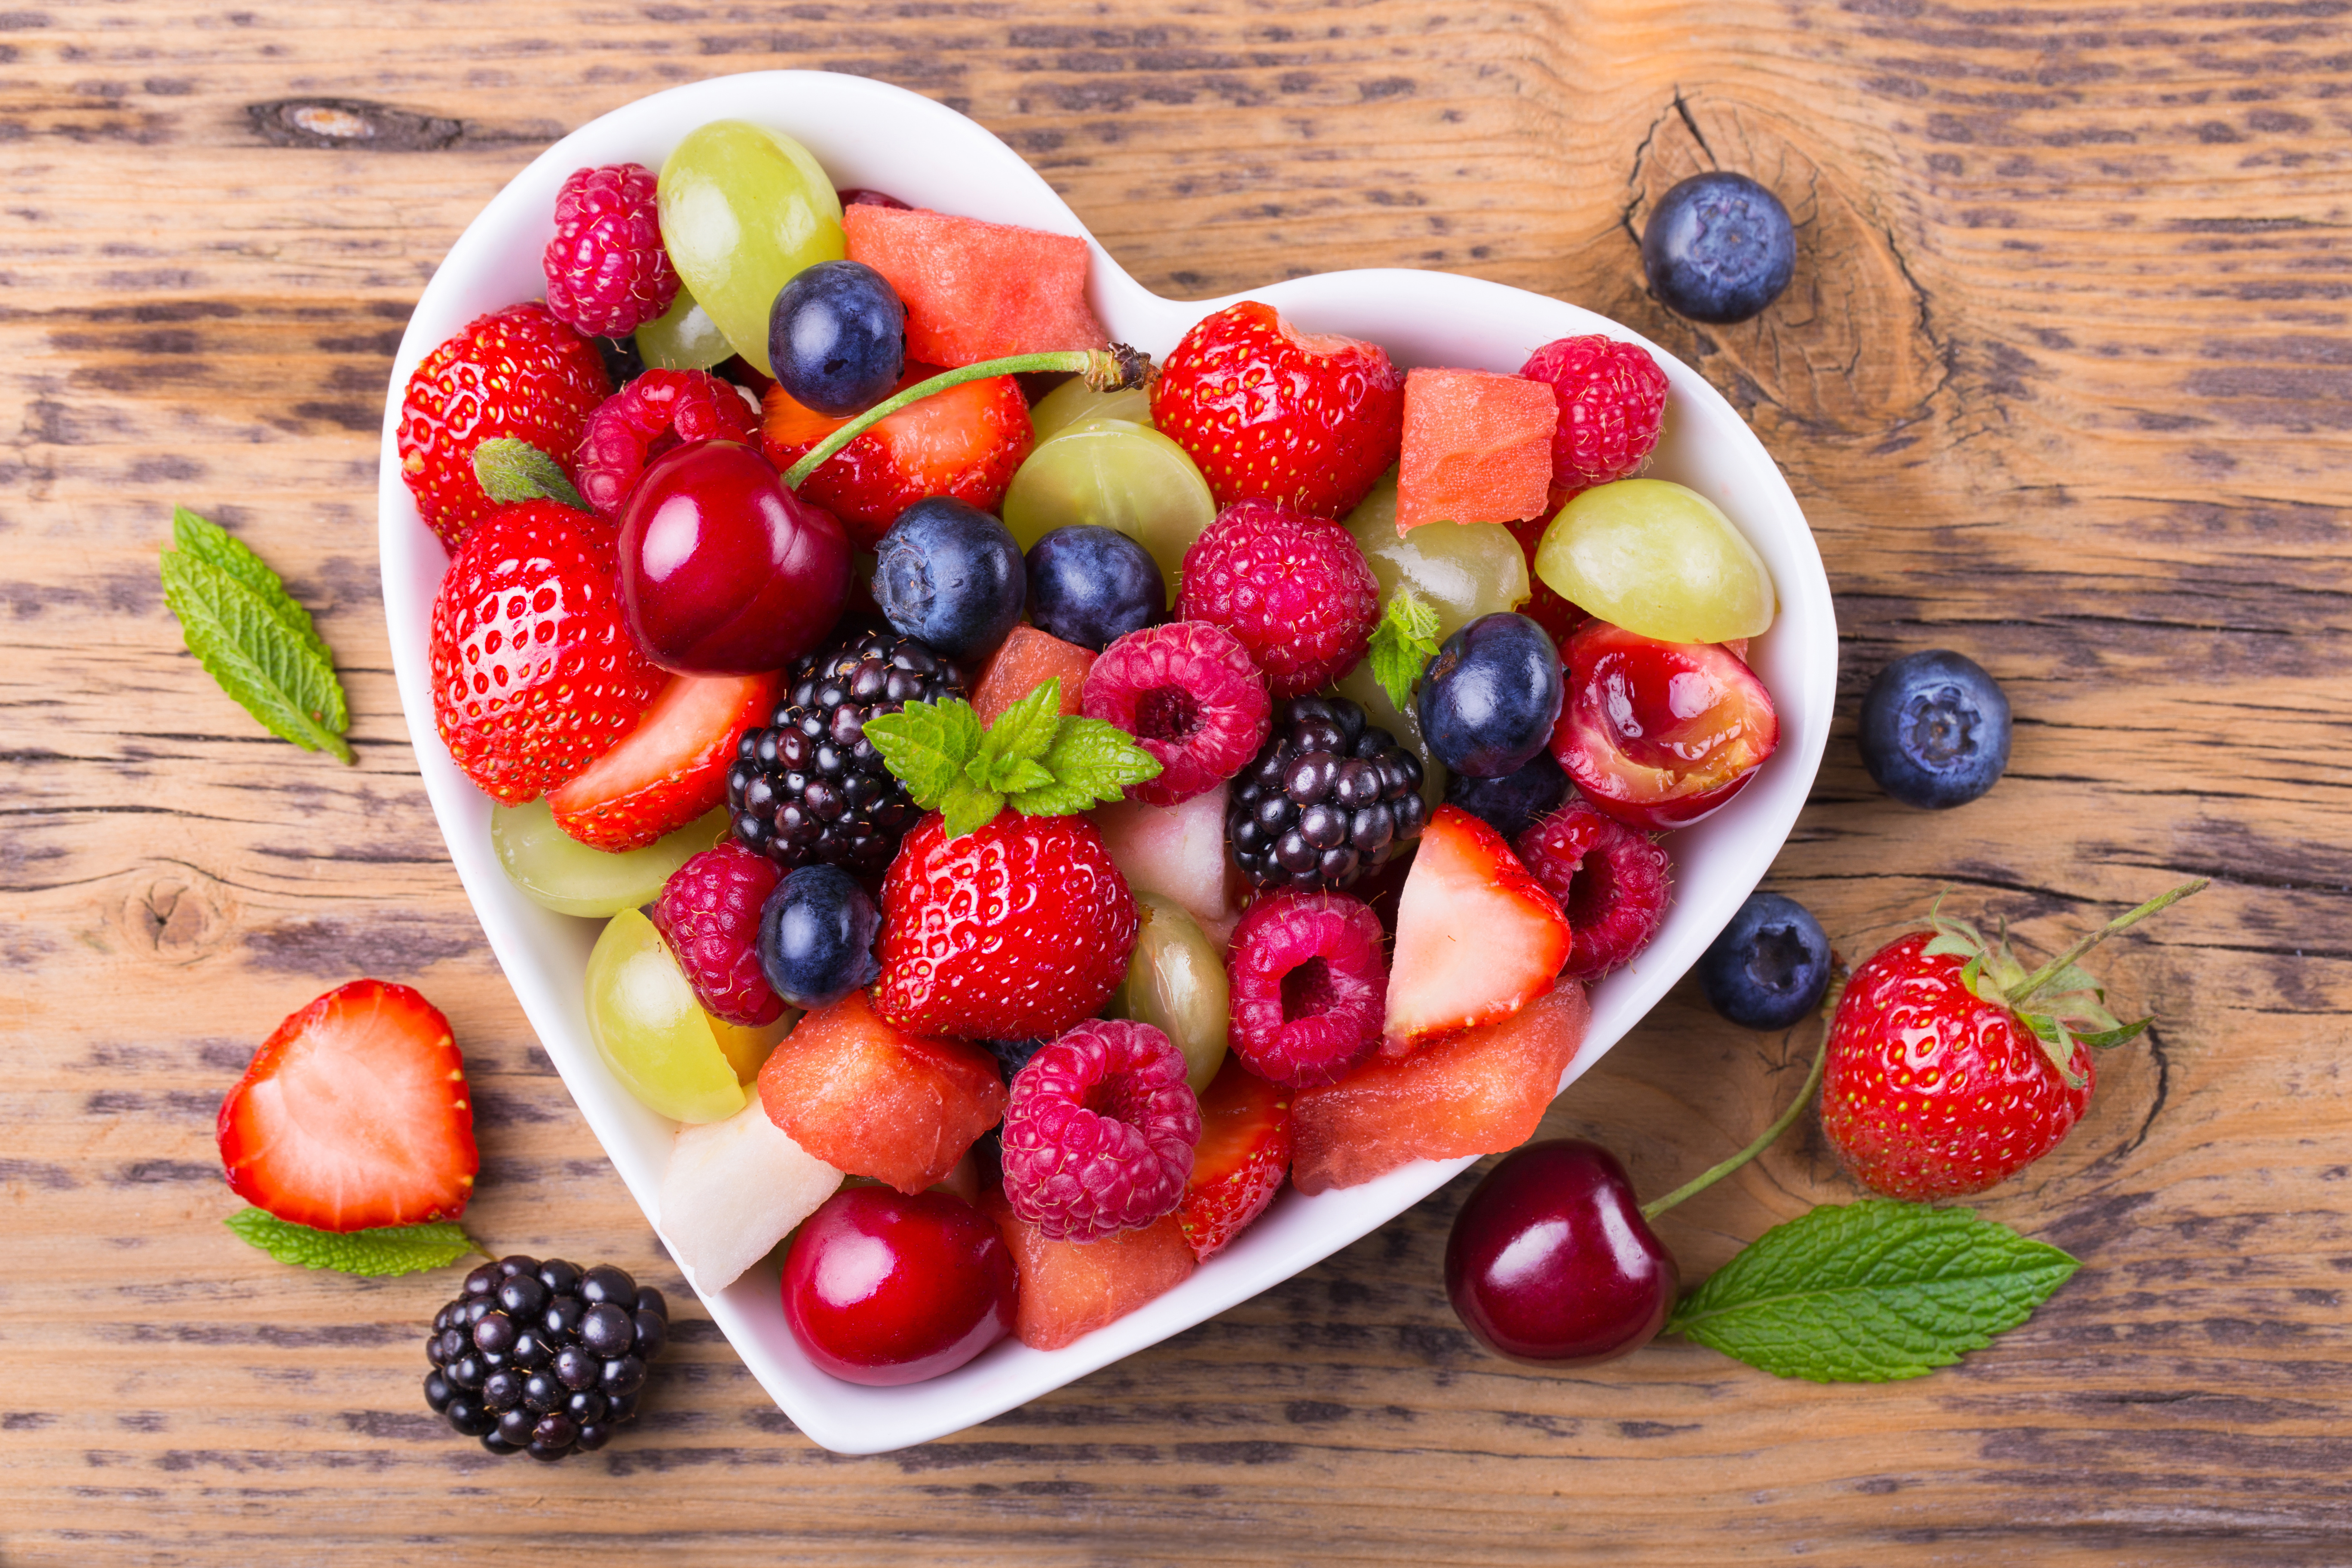 Image: Berries, vitamins, raspberries, strawberries, blackberries, cherries, blueberries, grapes, heart